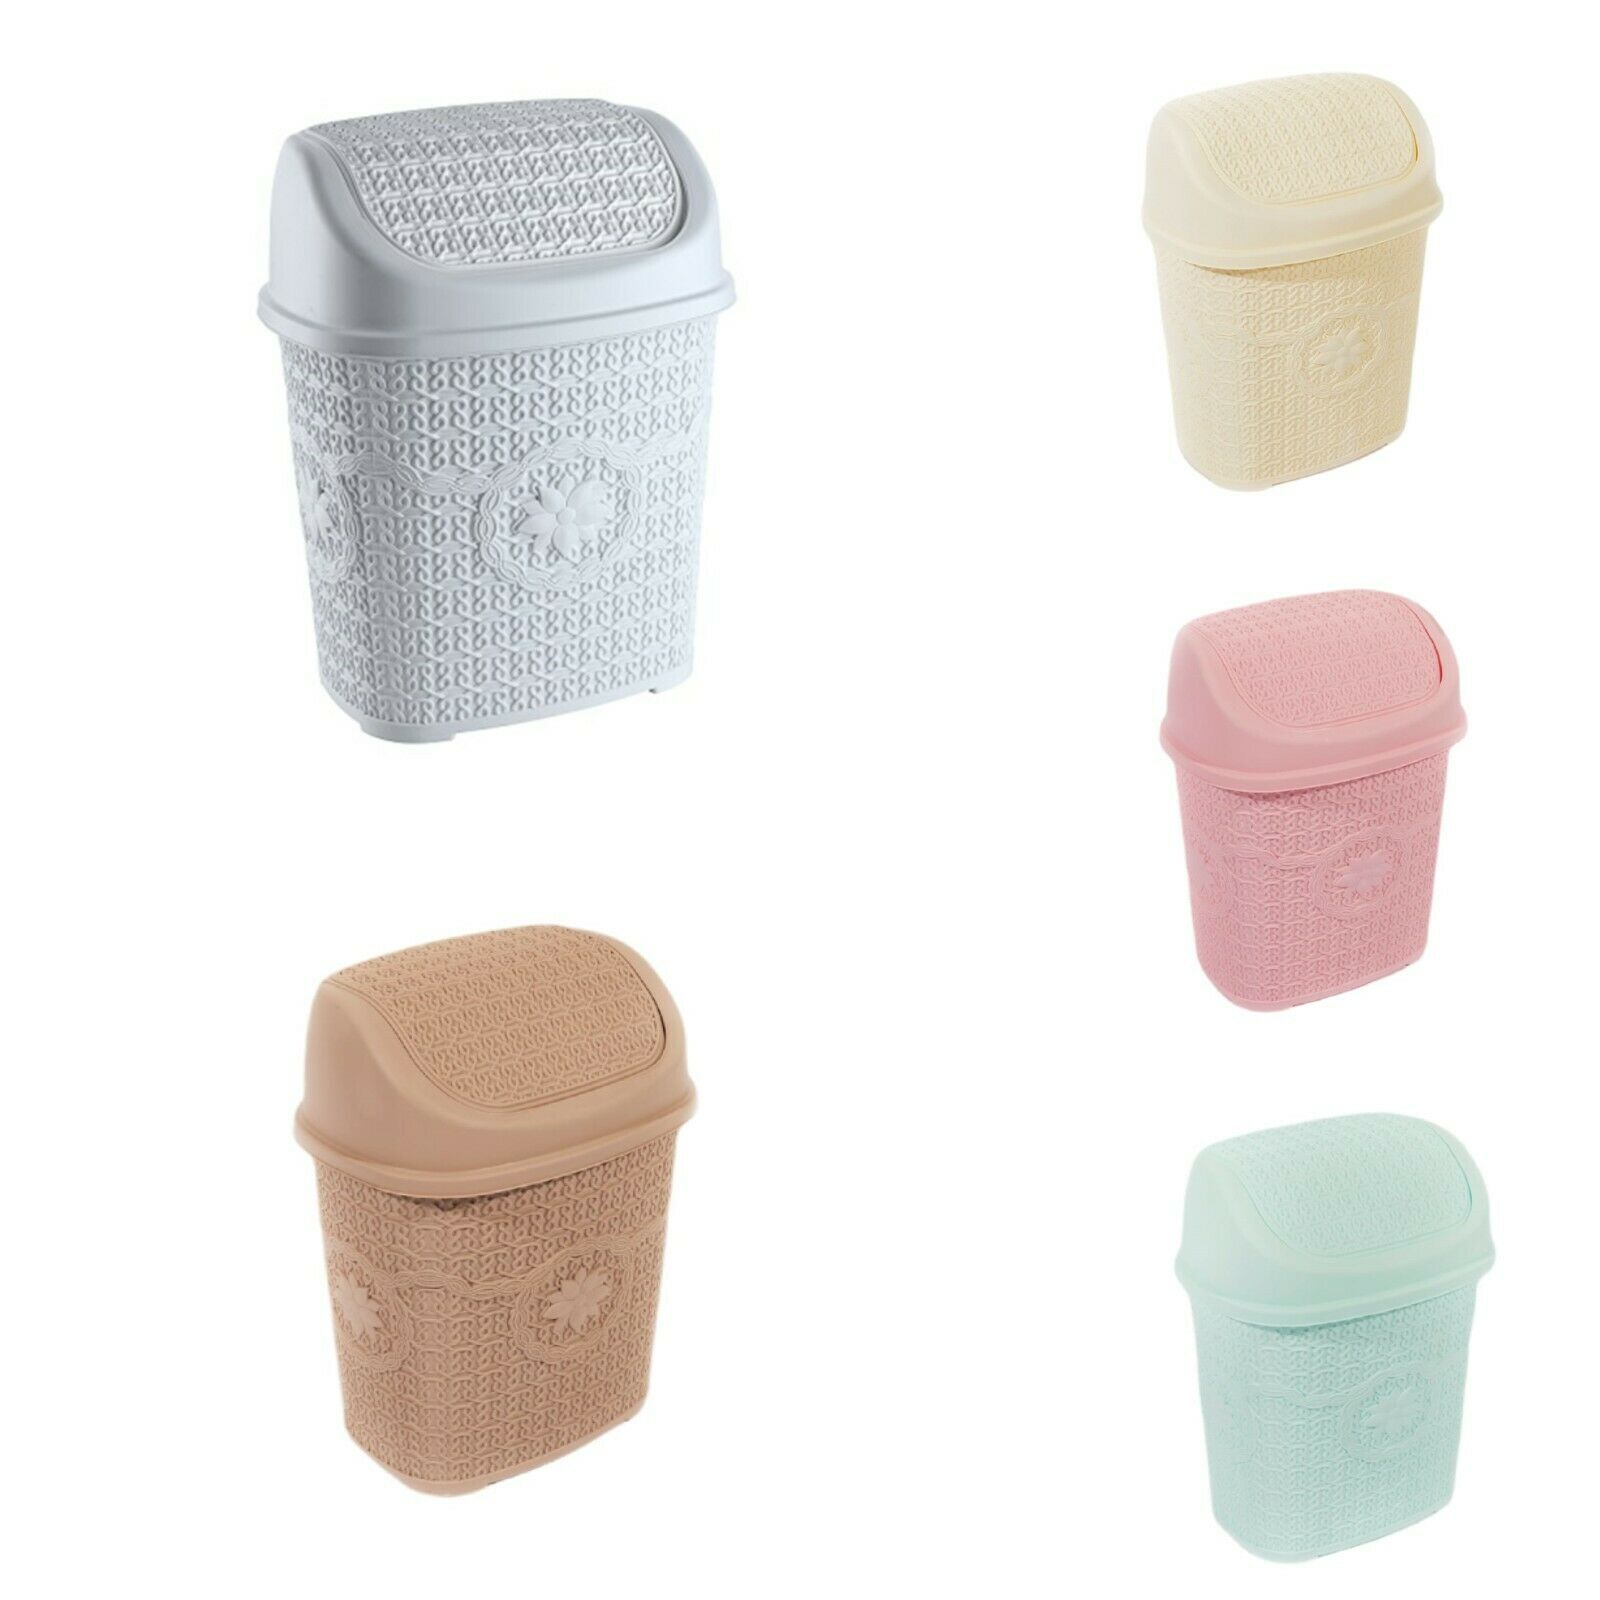 Rattan Waste Paper Basket Bin Home Office Kitchen Plastic Dusbin x 2 